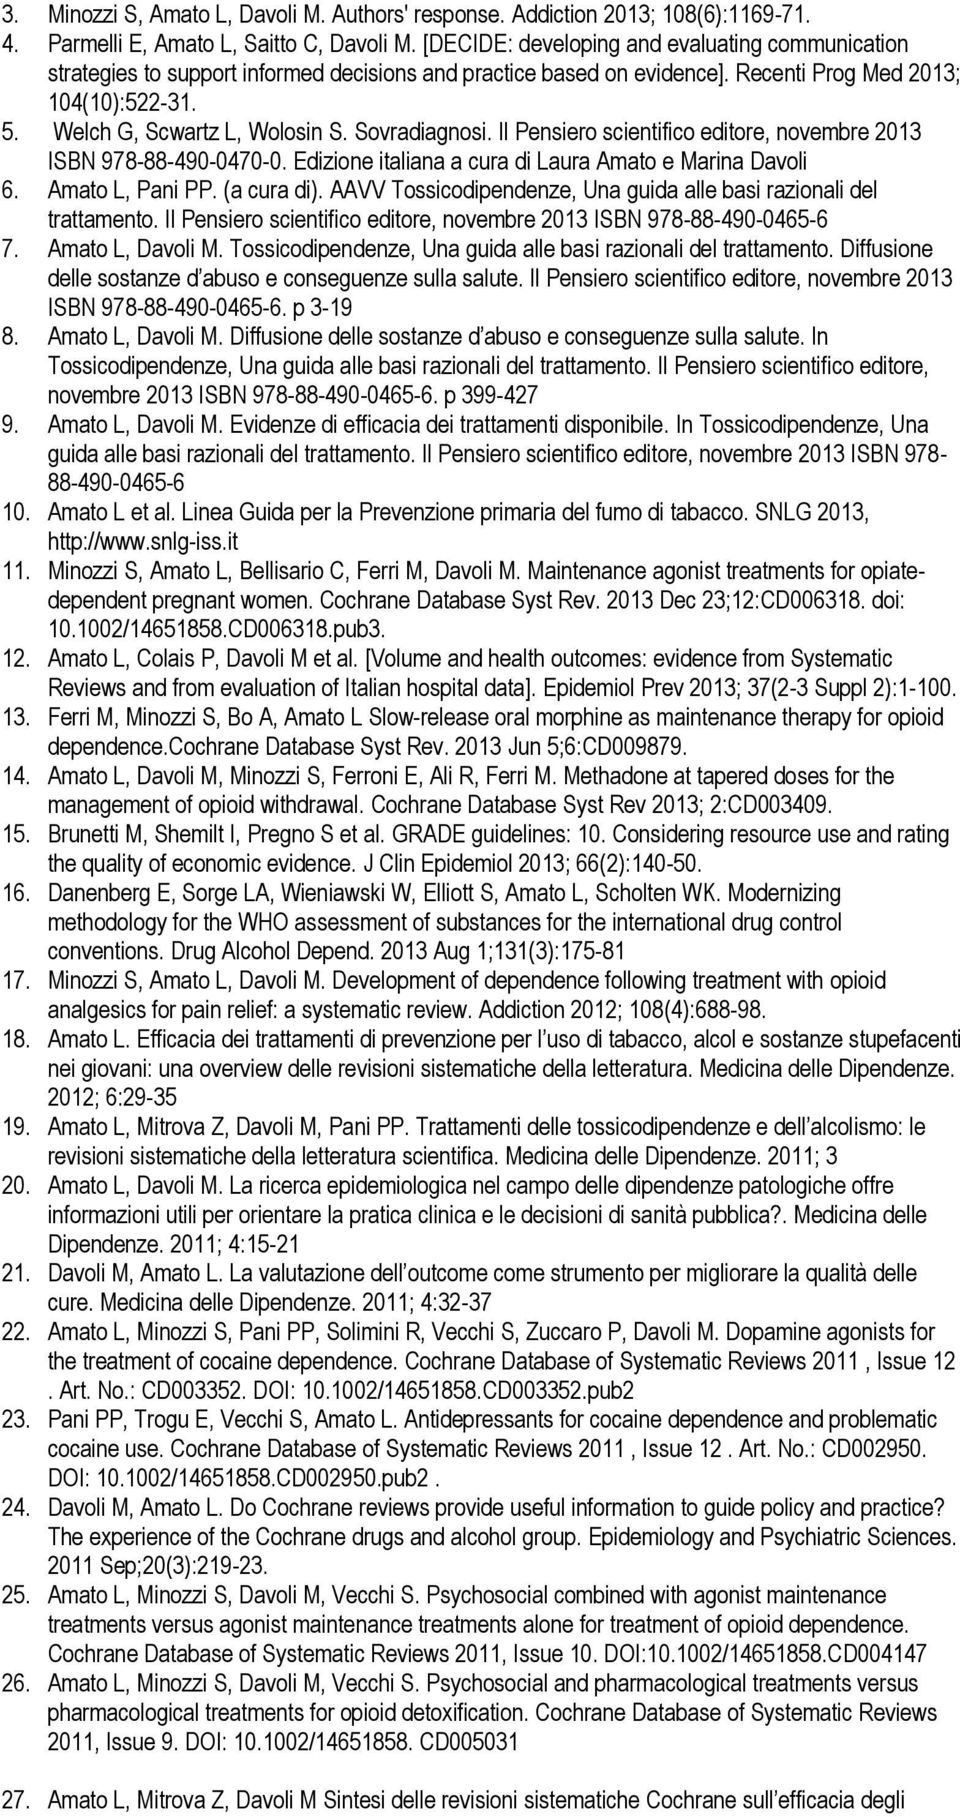 Sovradiagnosi. Il Pensiero scientifico editore, novembre 2013 ISBN 978-88-490-0470-0. Edizione italiana a cura di Laura Amato e Marina Davoli 6. Amato L, Pani PP. (a cura di).